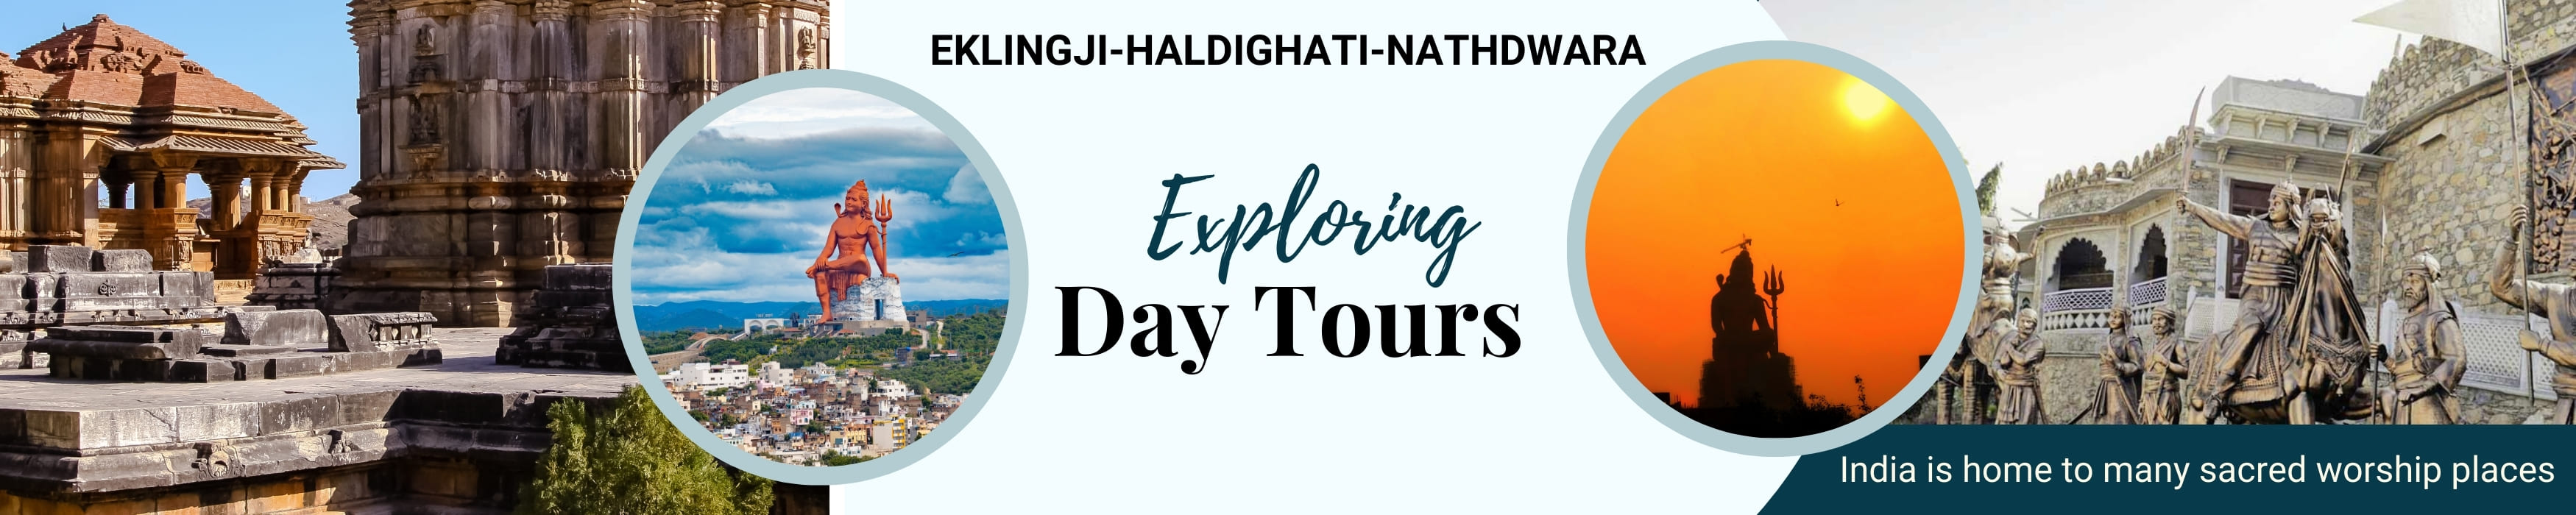 Eklingji-Haldighati-Nathdwara Tour